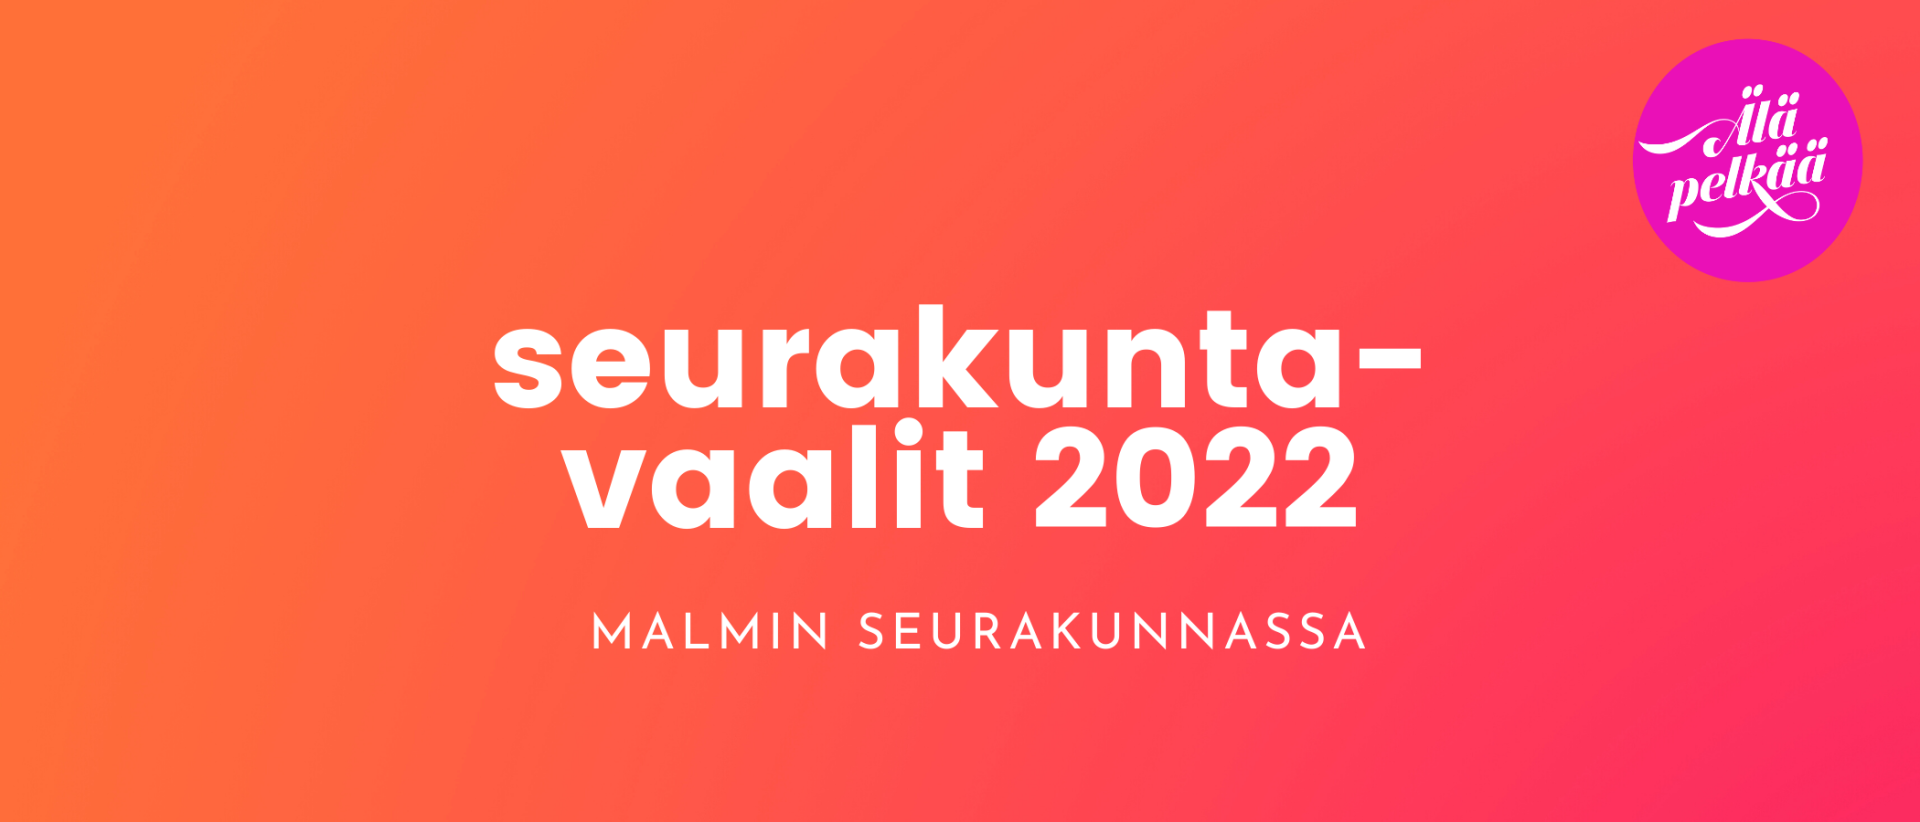 Seurakuntavaalit 2022 Malmin seurakunnassa